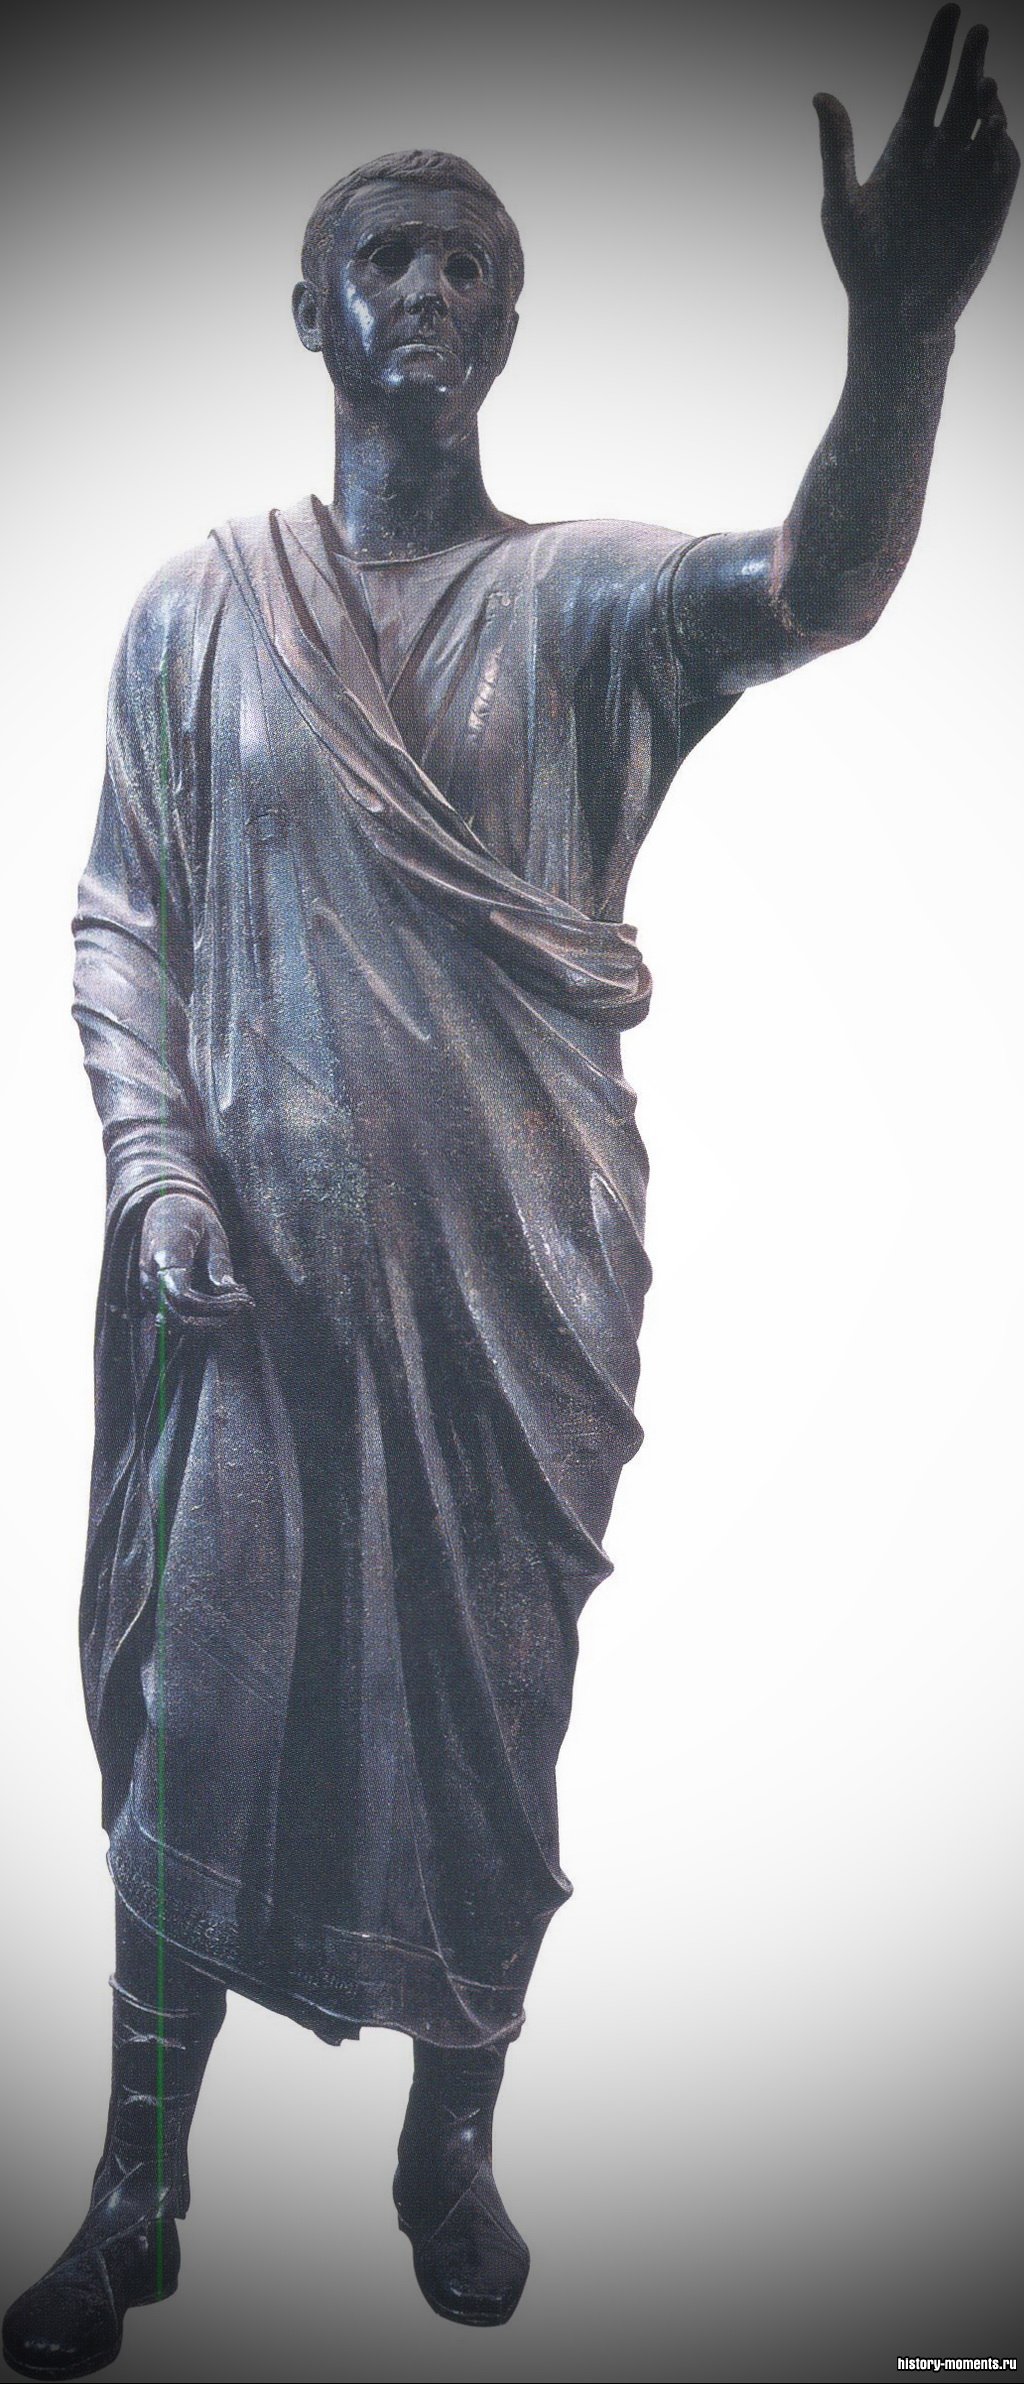 Юристы были талантливыми ораторами. Это статуя римского оратора.